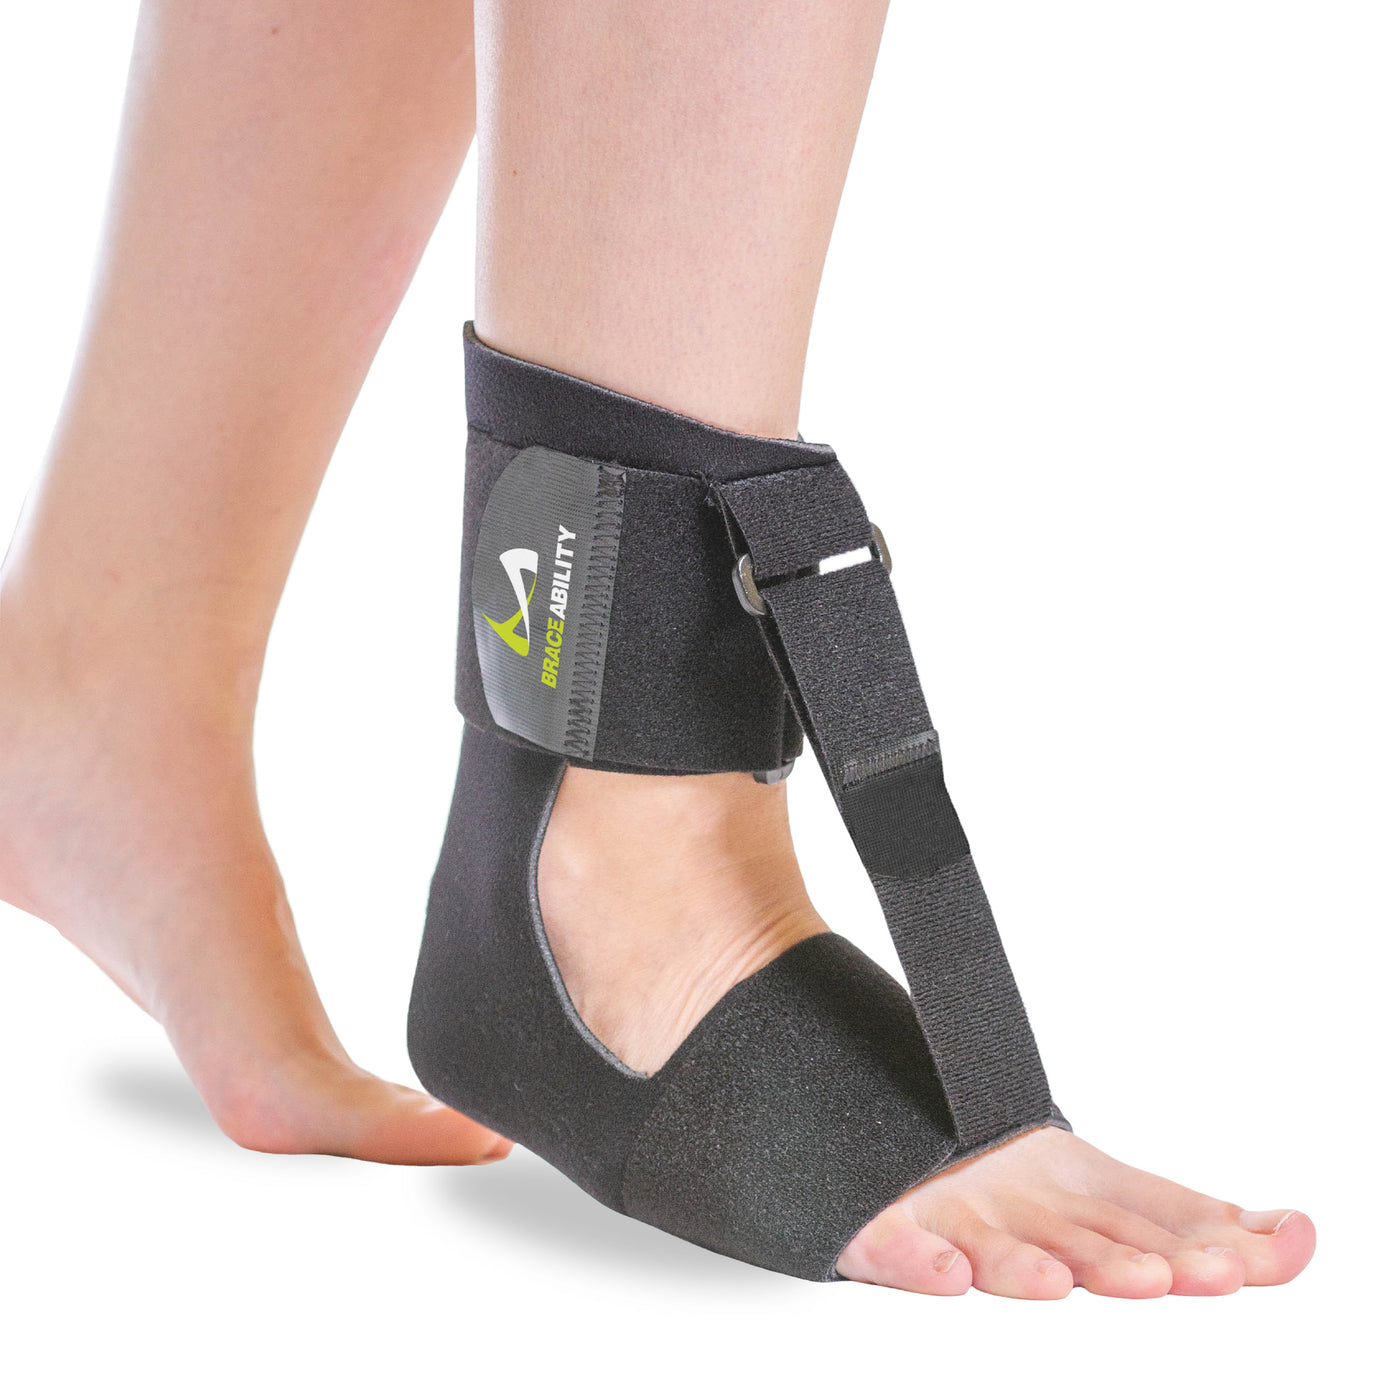 The BraceAbility sleeping foot drop brace is a sock style ankle brace